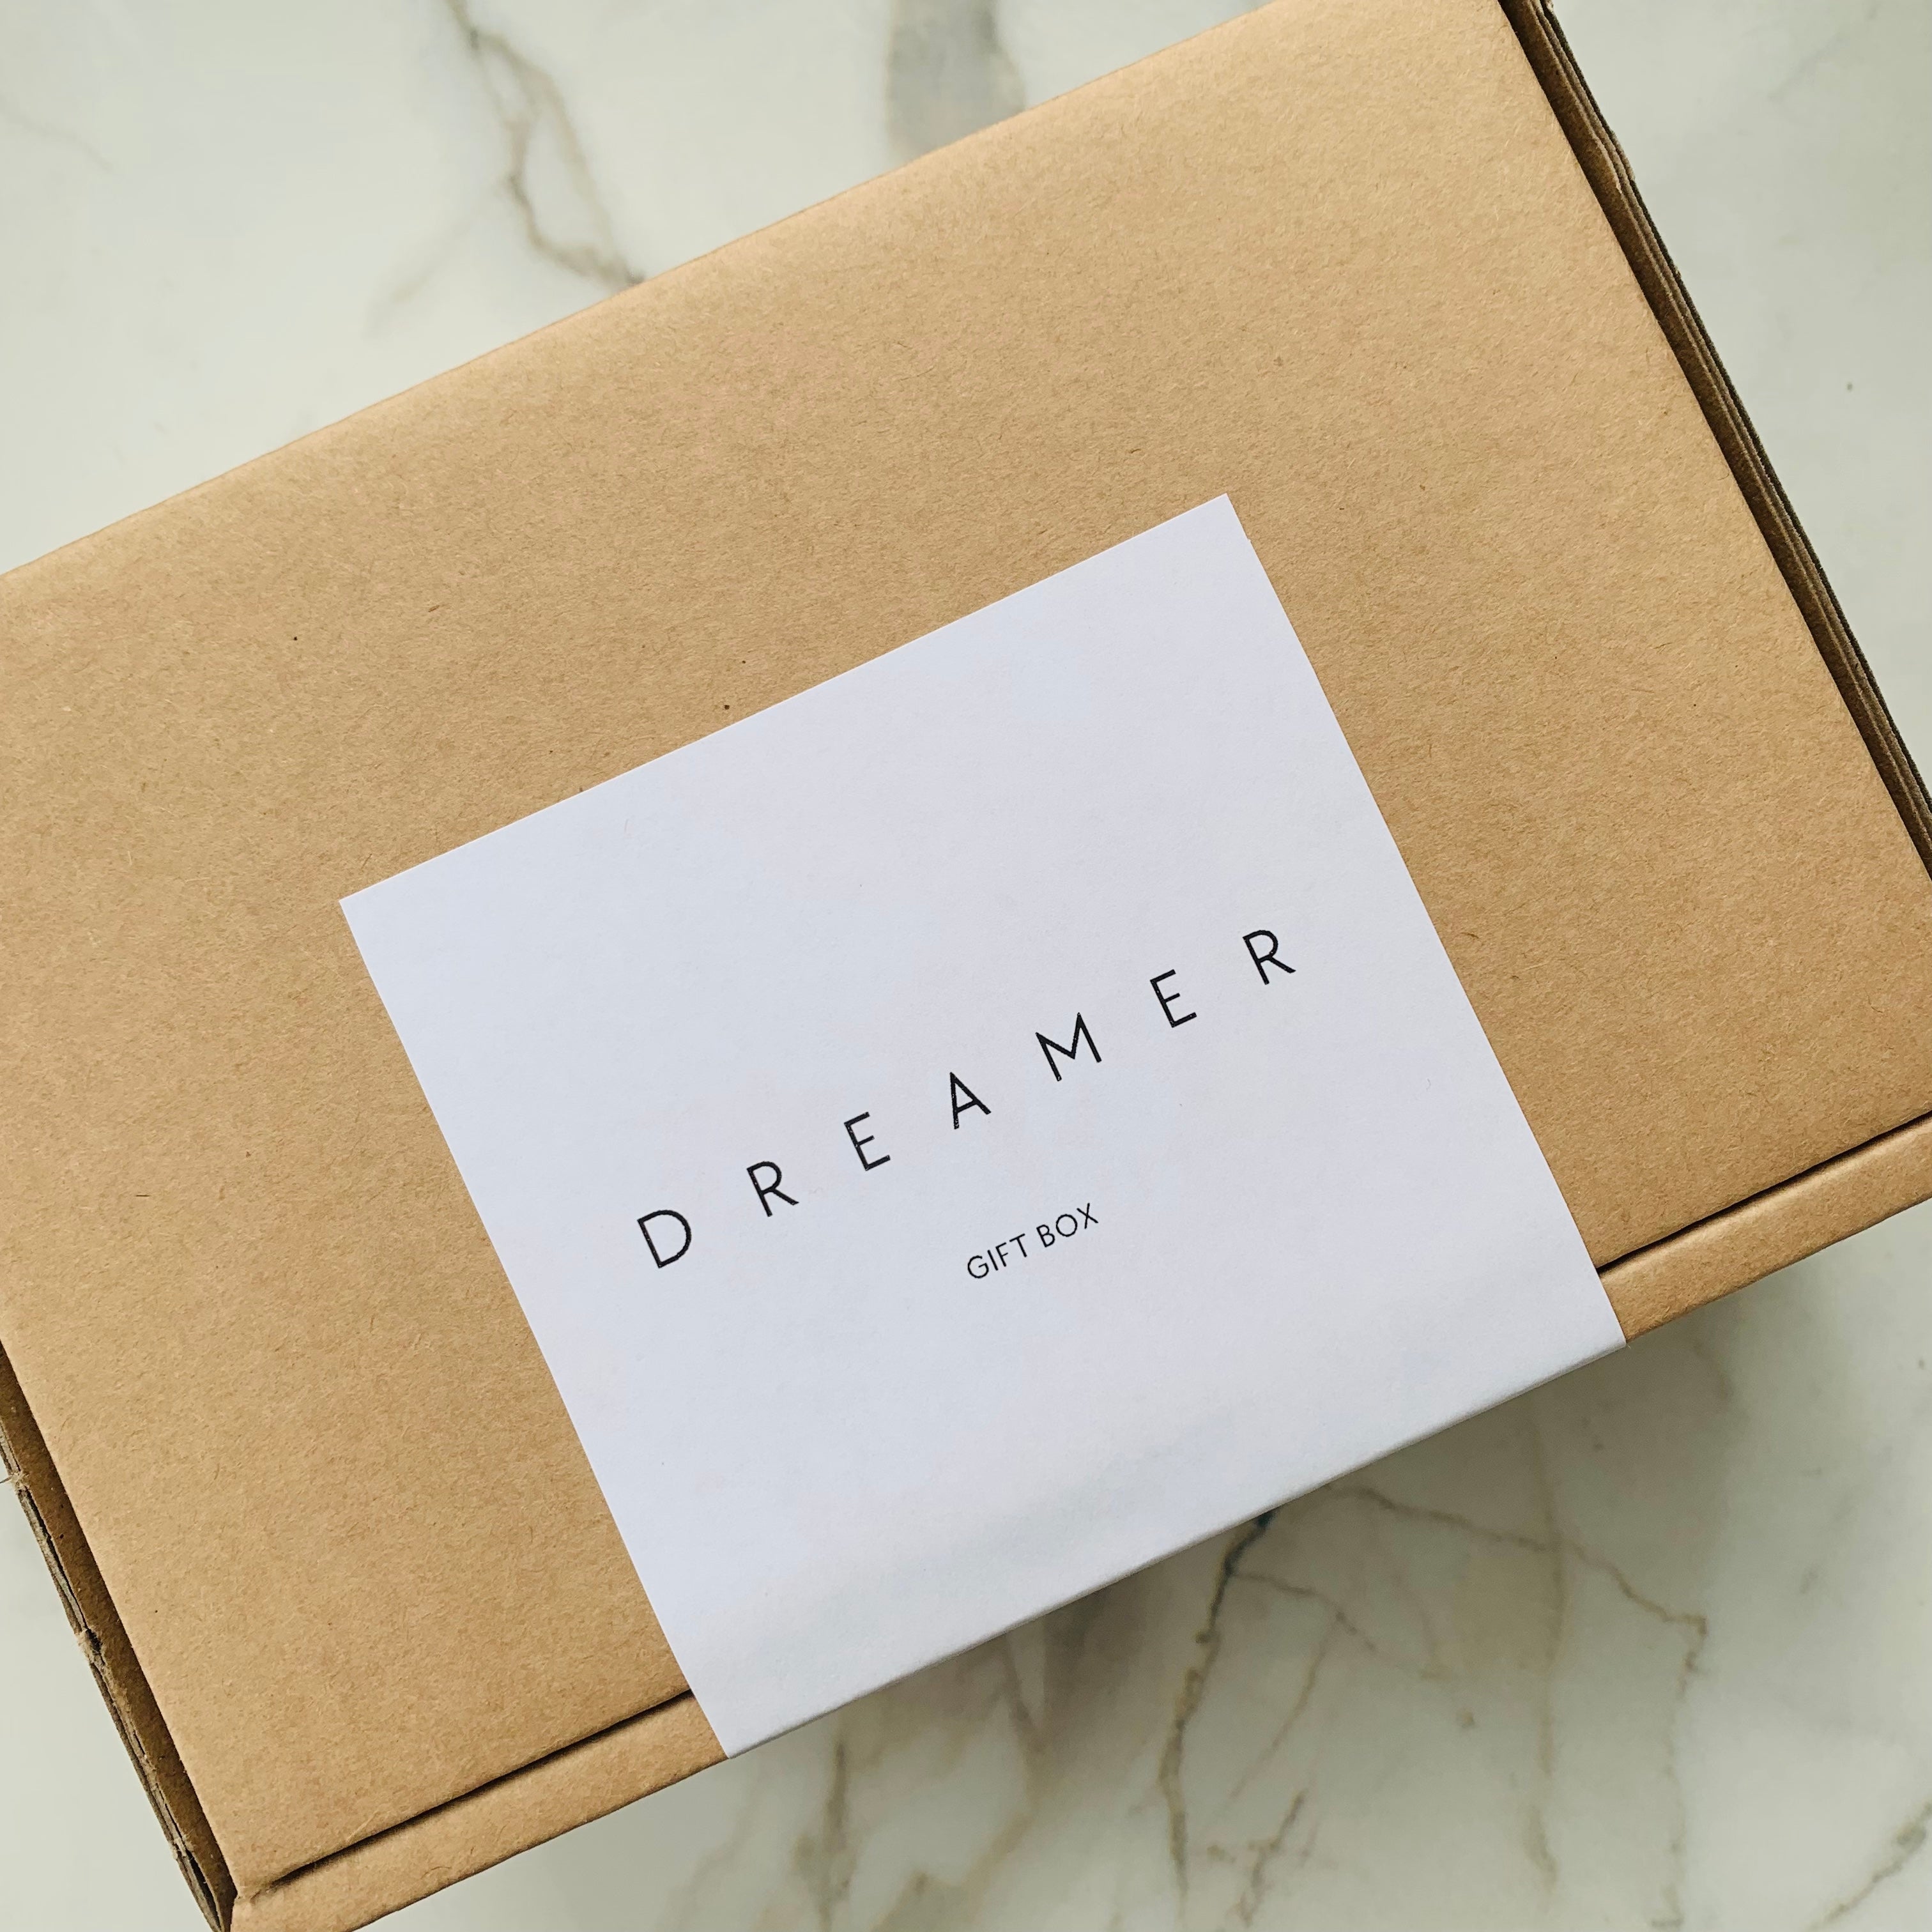 DREAMER gift box